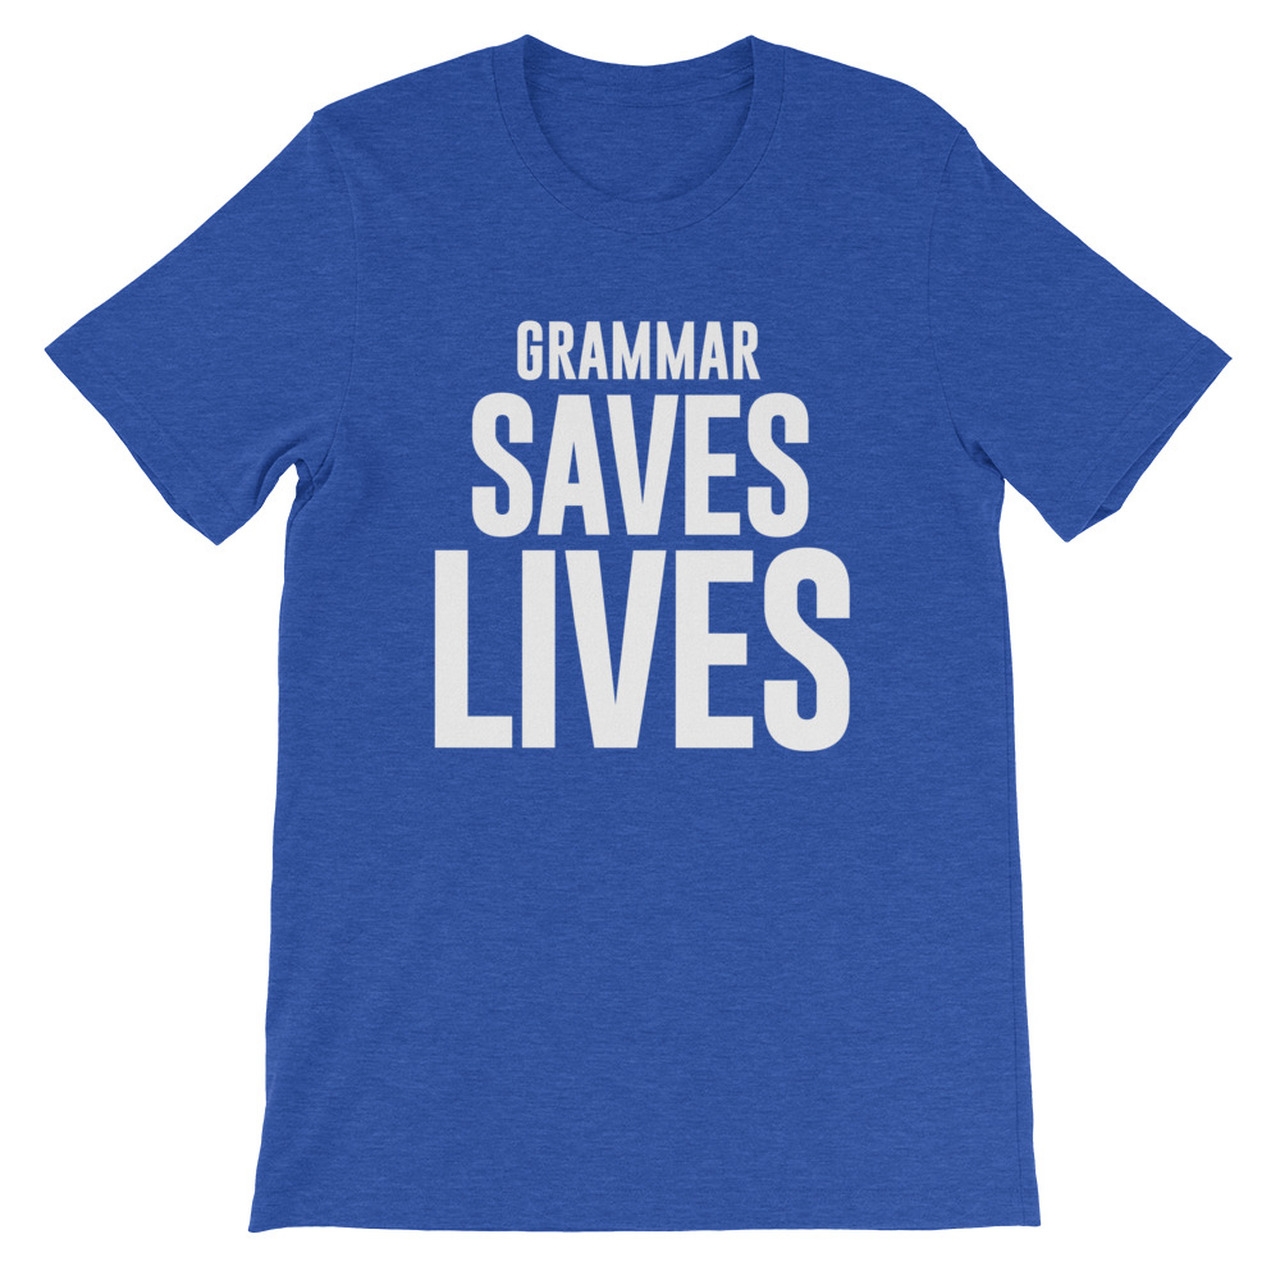 Grammar saves lives Unisex T-Shirt